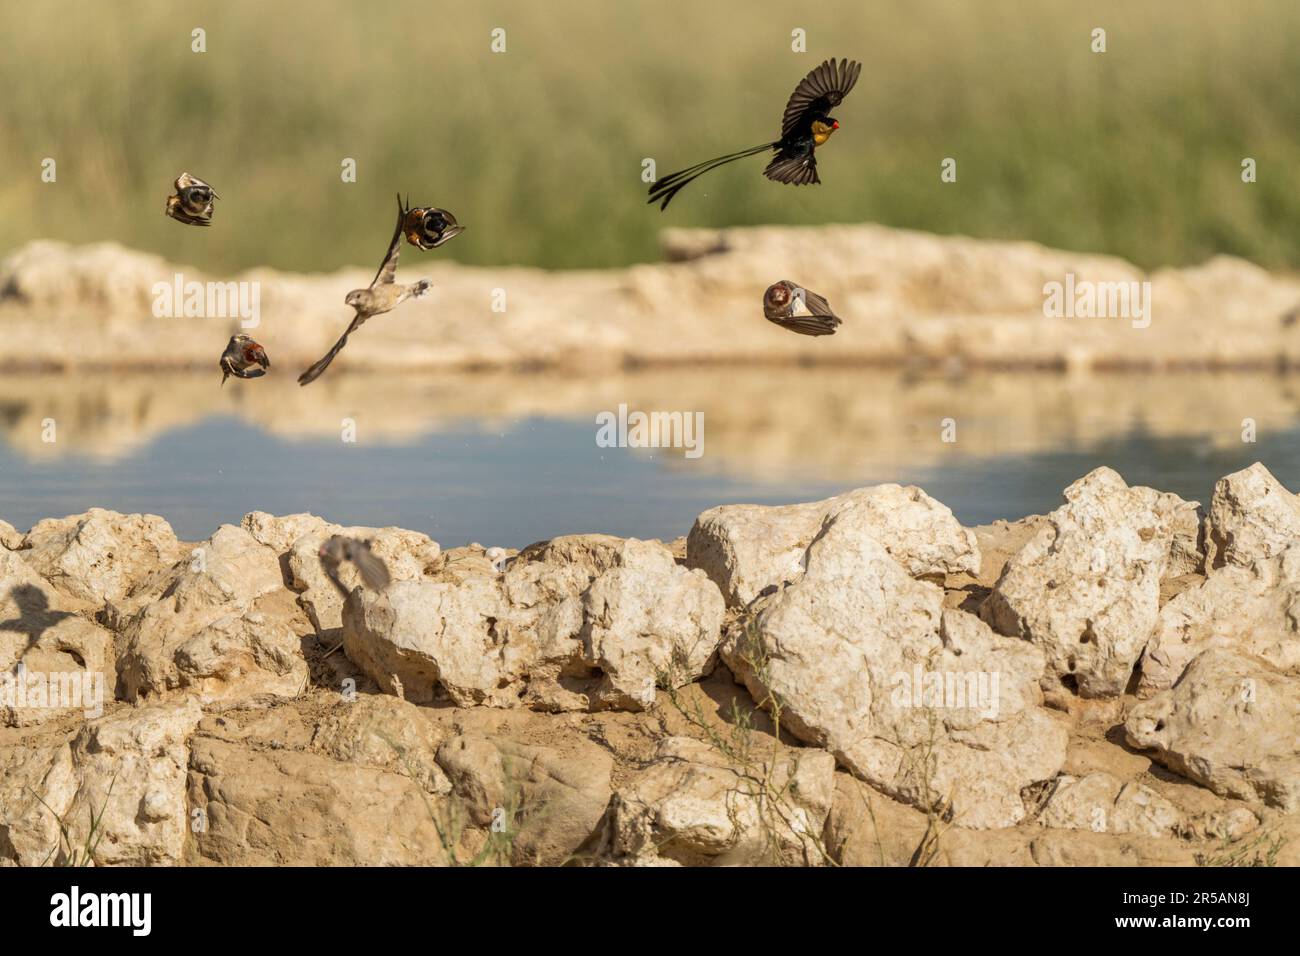 African birds flying over water in the Kalahari desert. Kalahari, Kgalagadi Transfrontier Park, South Africa Stock Photo